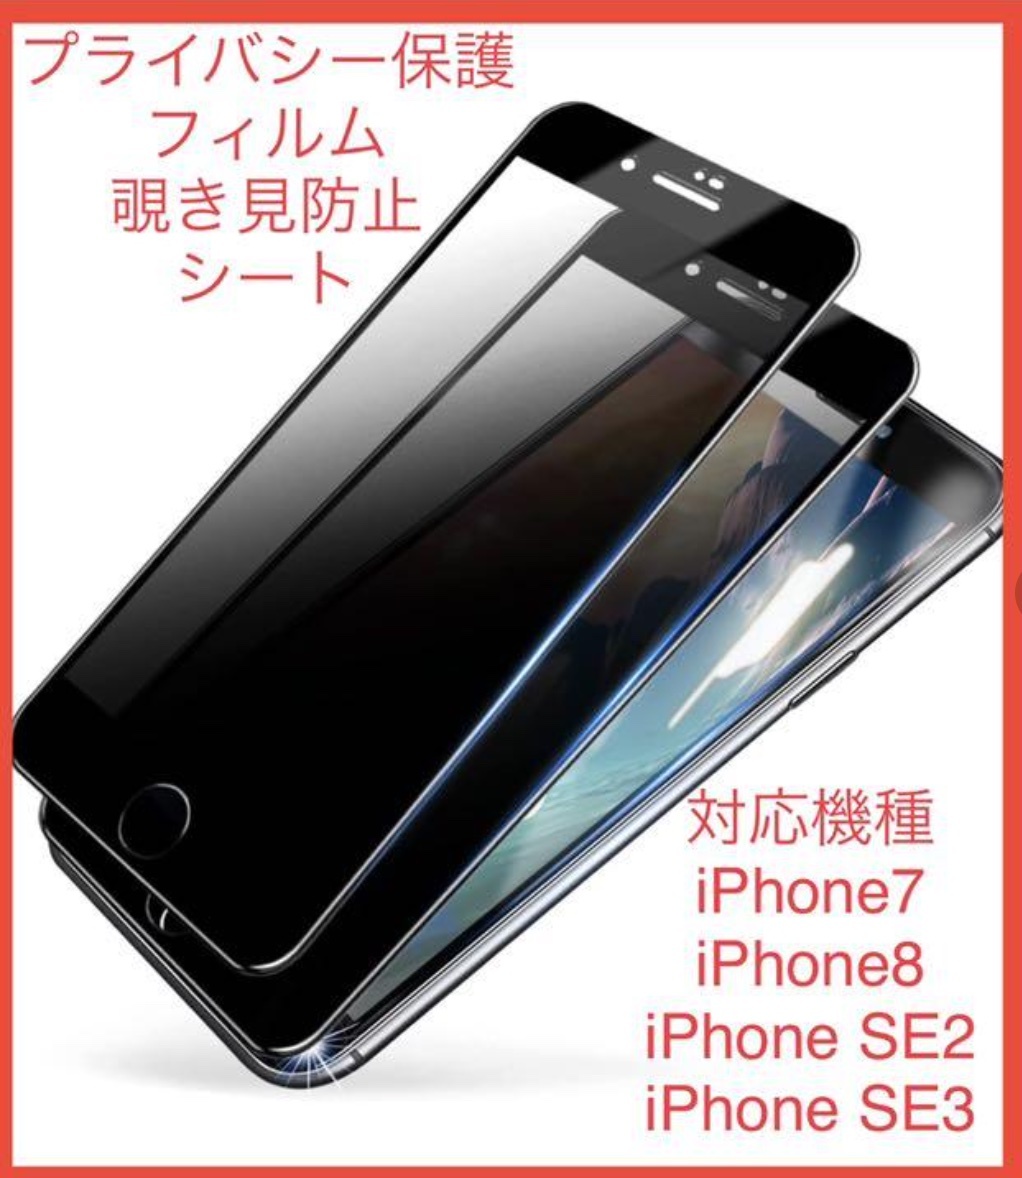 【2枚セットお得】iPhone 8 覗き見防止 強化ガラスフィルム フルカバー 硬度9H 指紋キズ 防止 iPhone 7/SE2/SE3も可 アイホン アイフォン_画像3